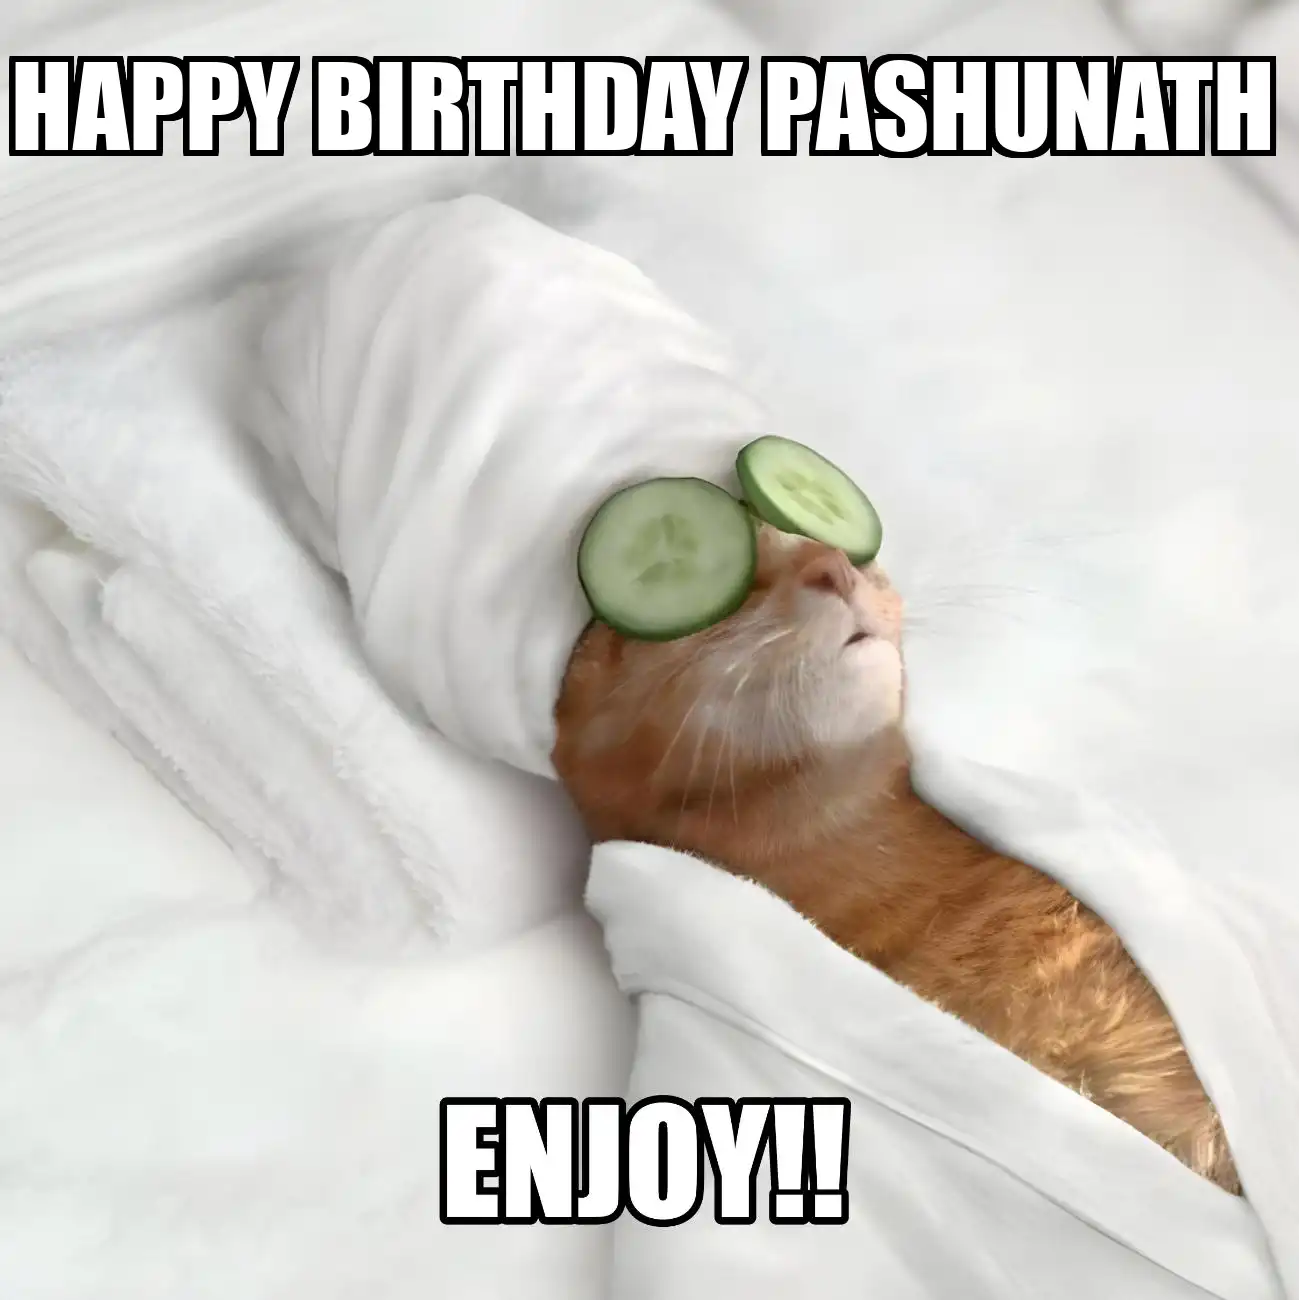 Happy Birthday Pashunath Enjoy Cat Meme